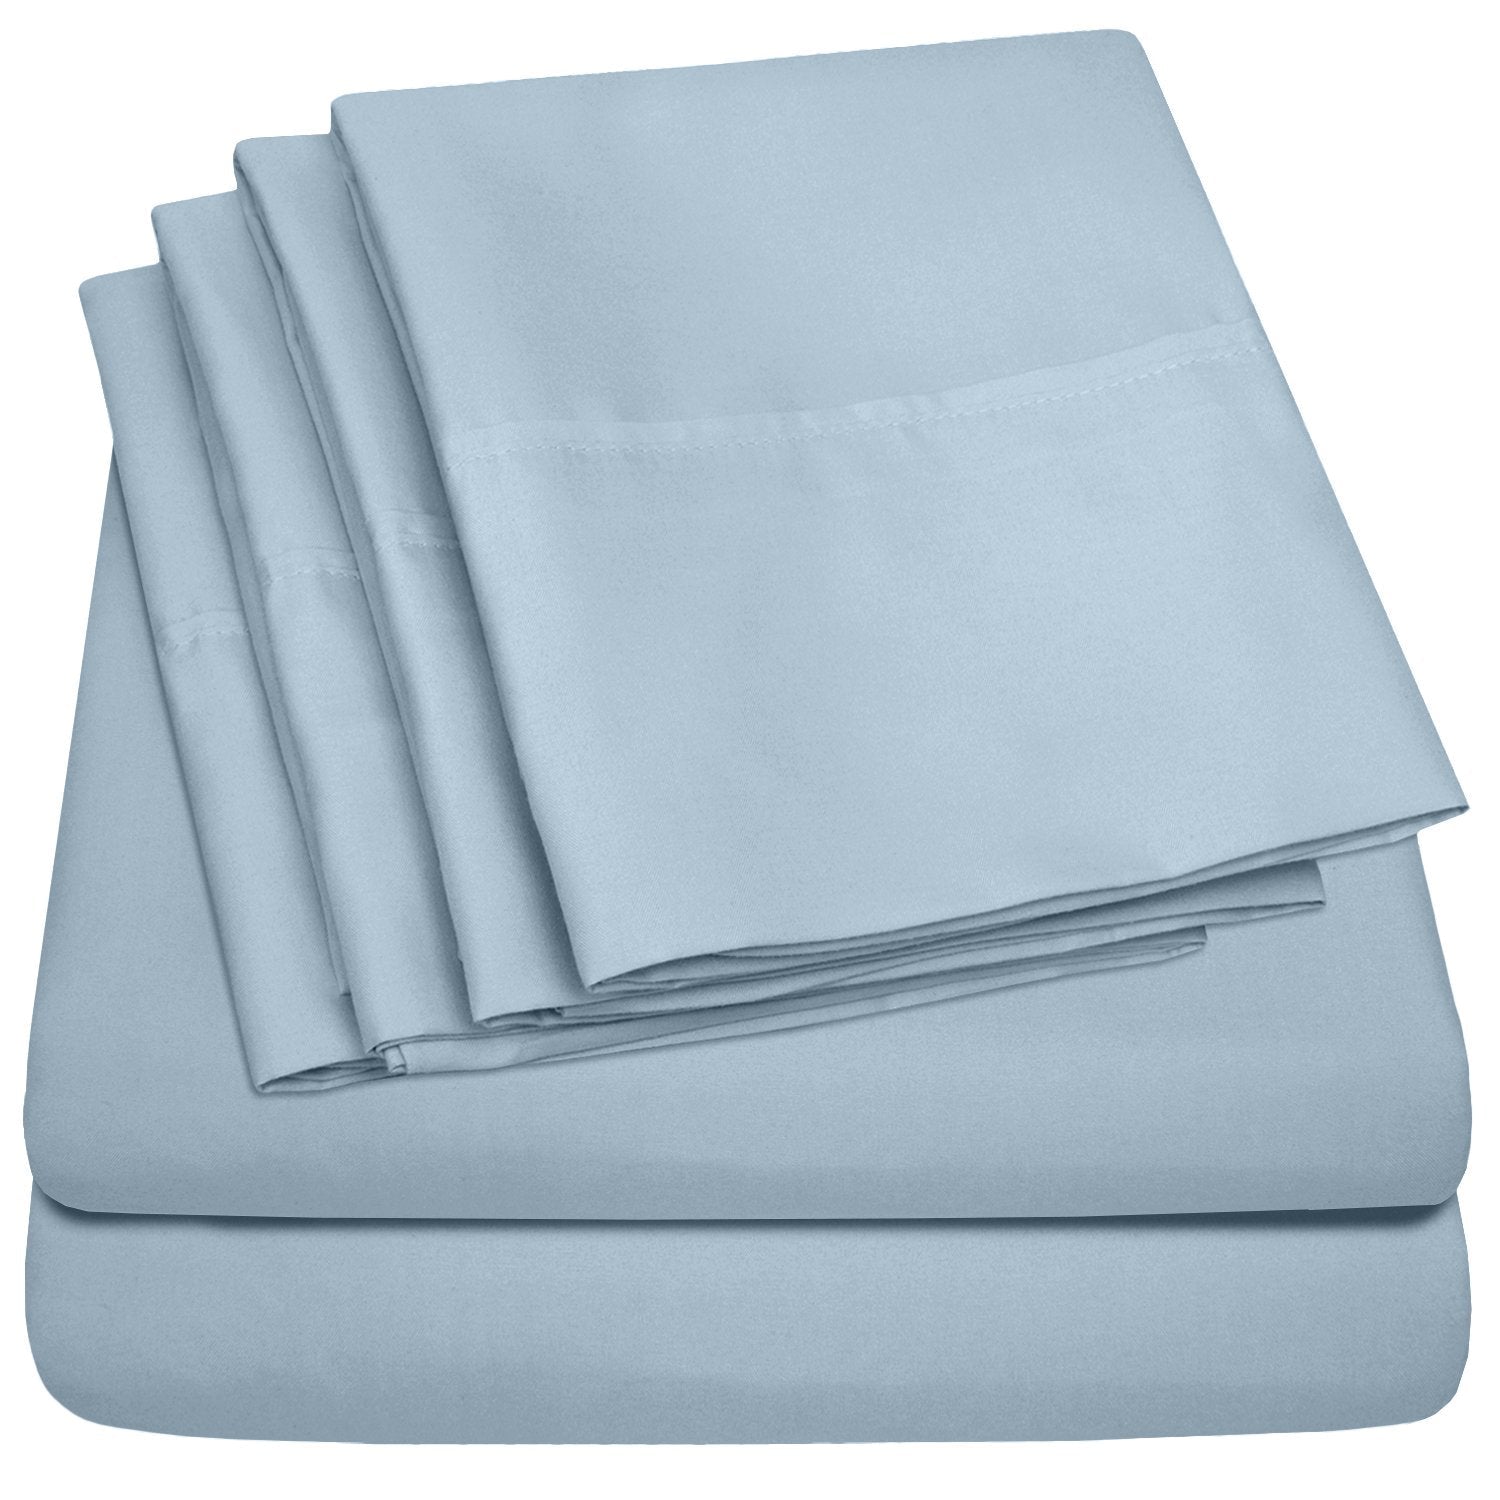 Deluxe 6-Piece Bed Sheet Set (Misty Blue) - Folded